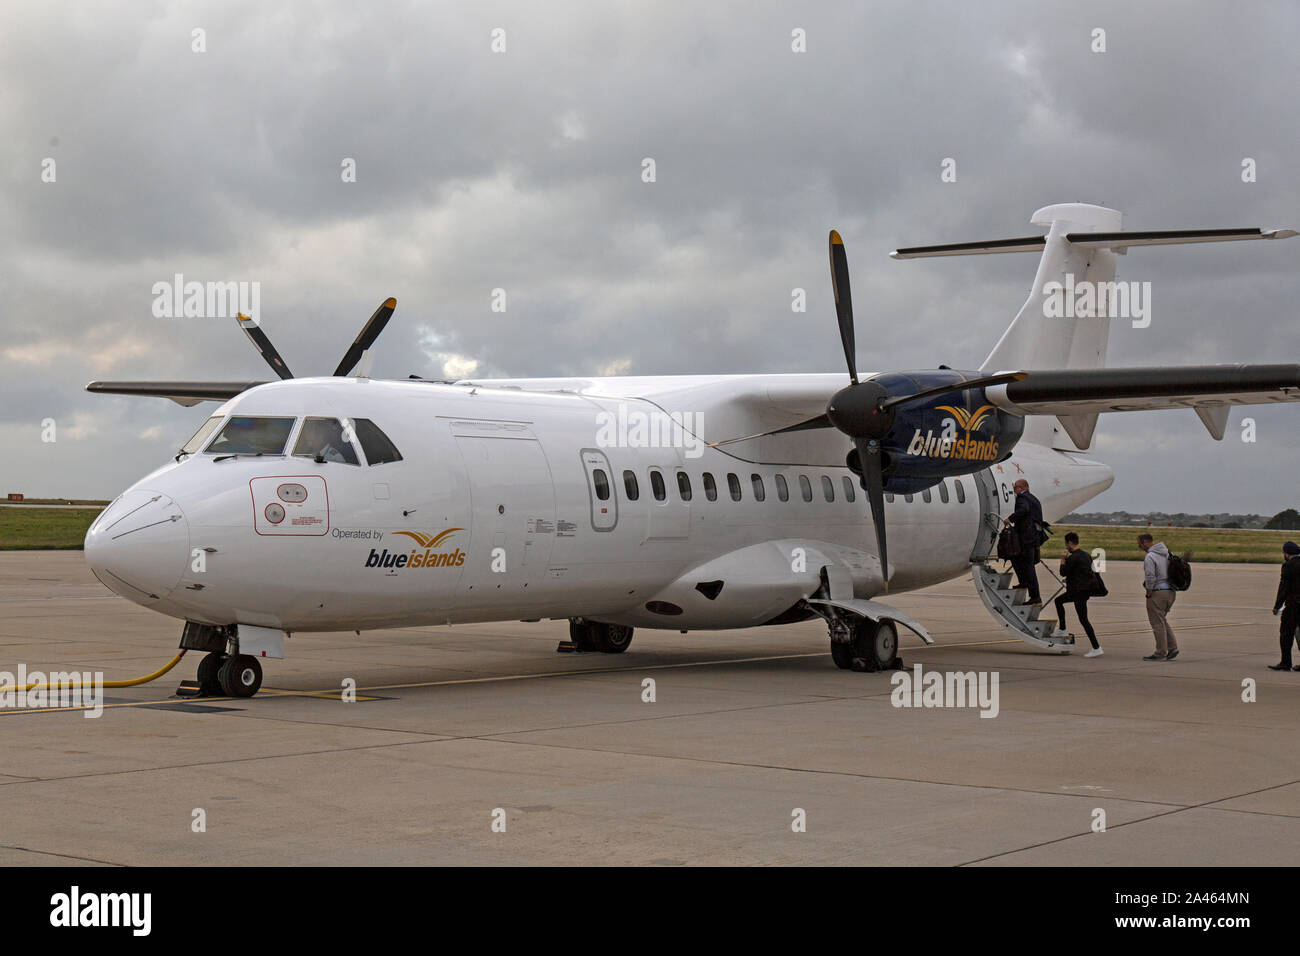 Un Isole blu ATR-42 aereo, registrazione G-ISLH, tenendo sui passeggeri presso l'aeroporto di Jersey inn le Isole del Canale. Foto Stock